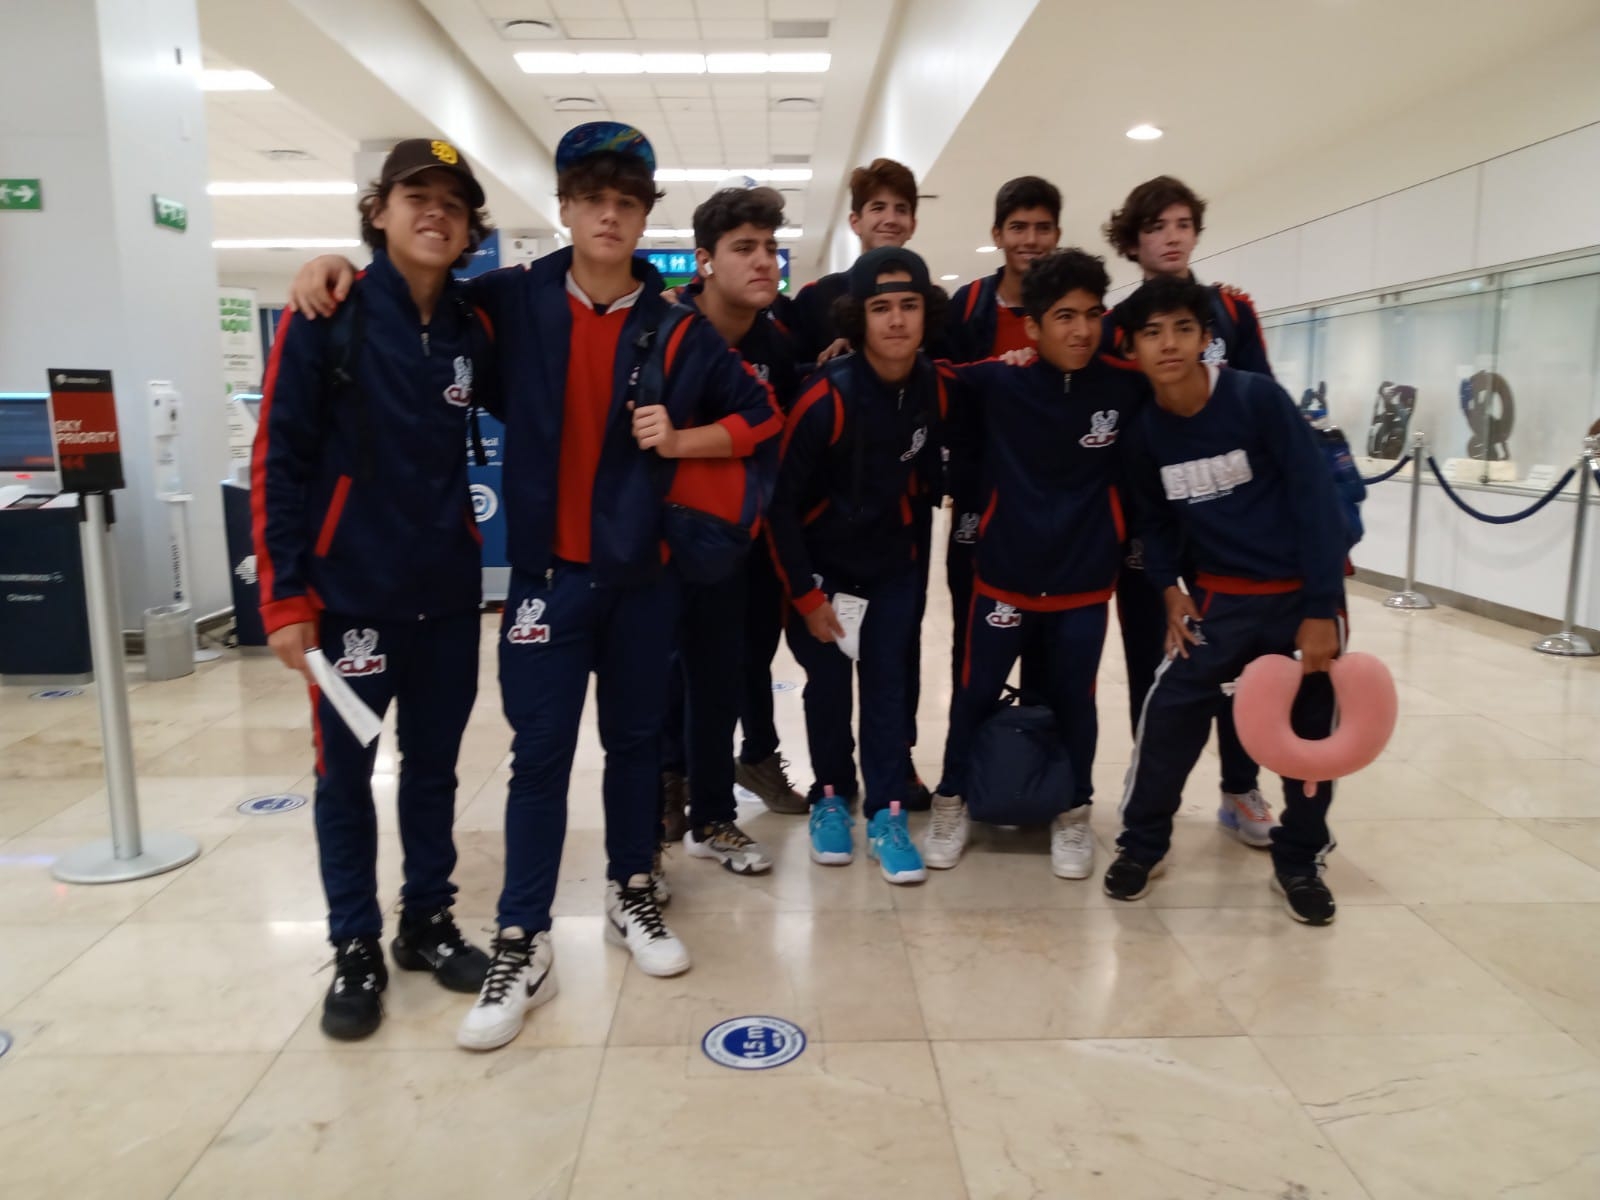 Aeropuerto de Mérida: Basquetbolistas yucatecos viajan al Campeonato Nacional en Cuernavaca